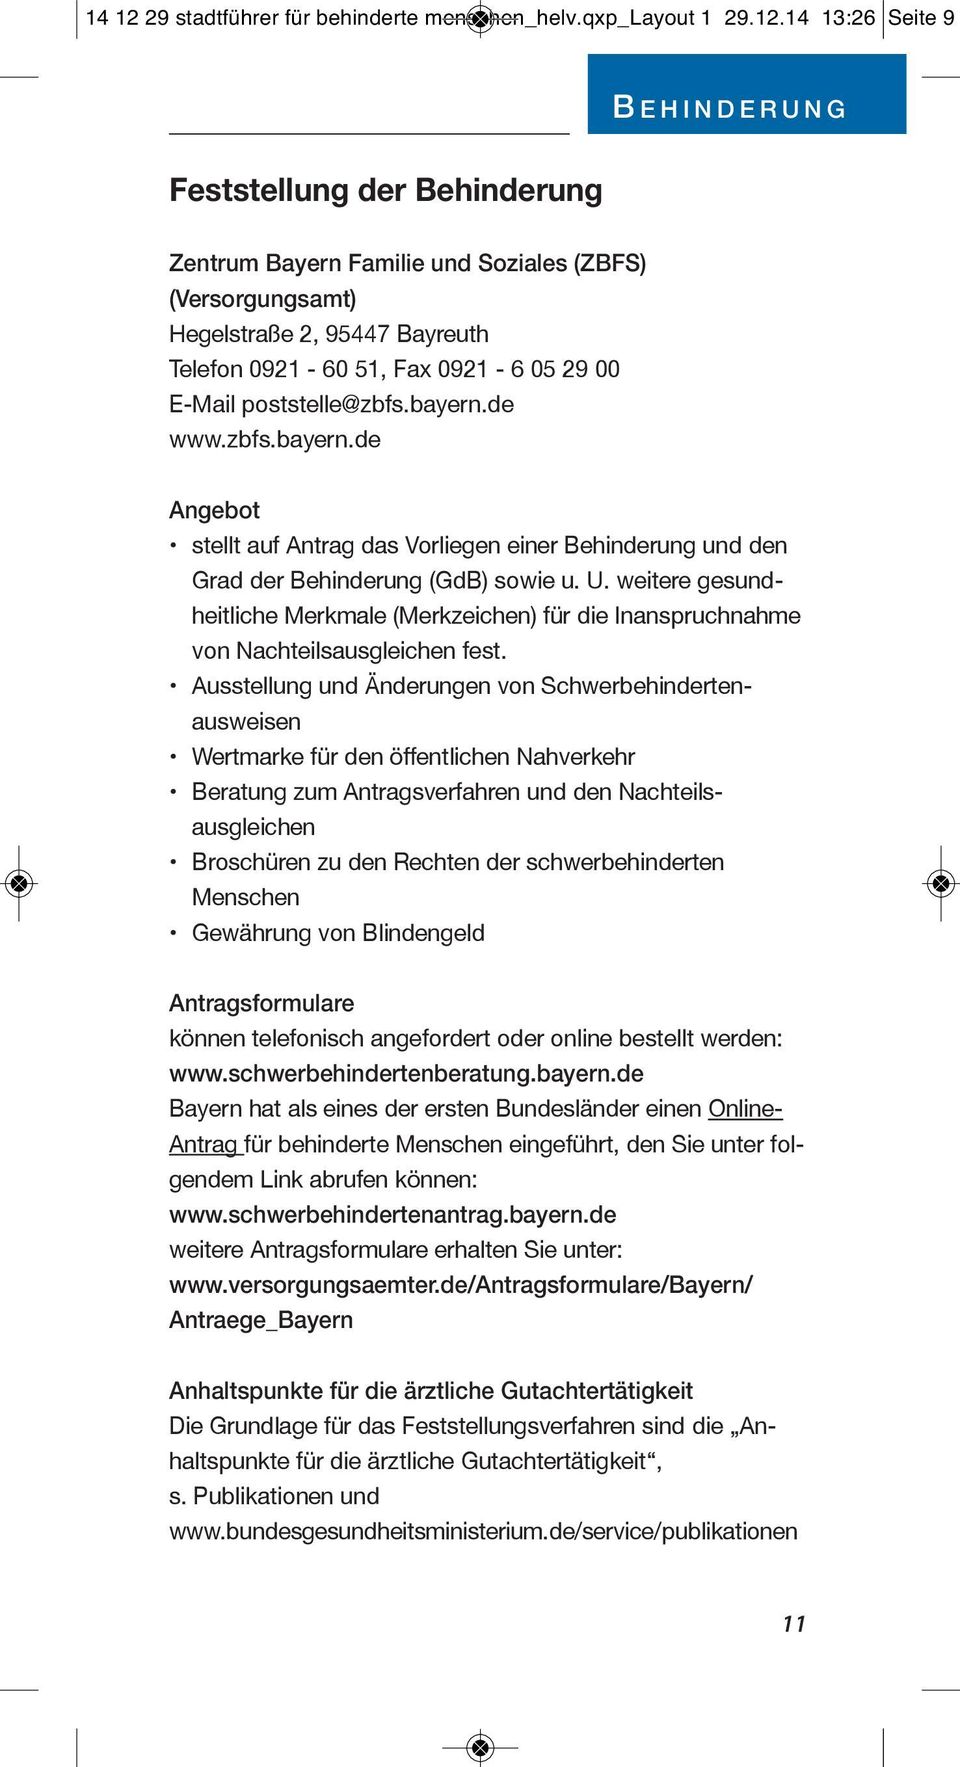 14 13:26 Seite 9 B E H I N D E R U N G Feststellung der Behinderung Behinderung Zentrum Bayern Familie und Soziales (ZBFS) Zentrum Bayern Familie und Soziales (ZBFS) (Versorgungsamt) (Versorgungsamt)